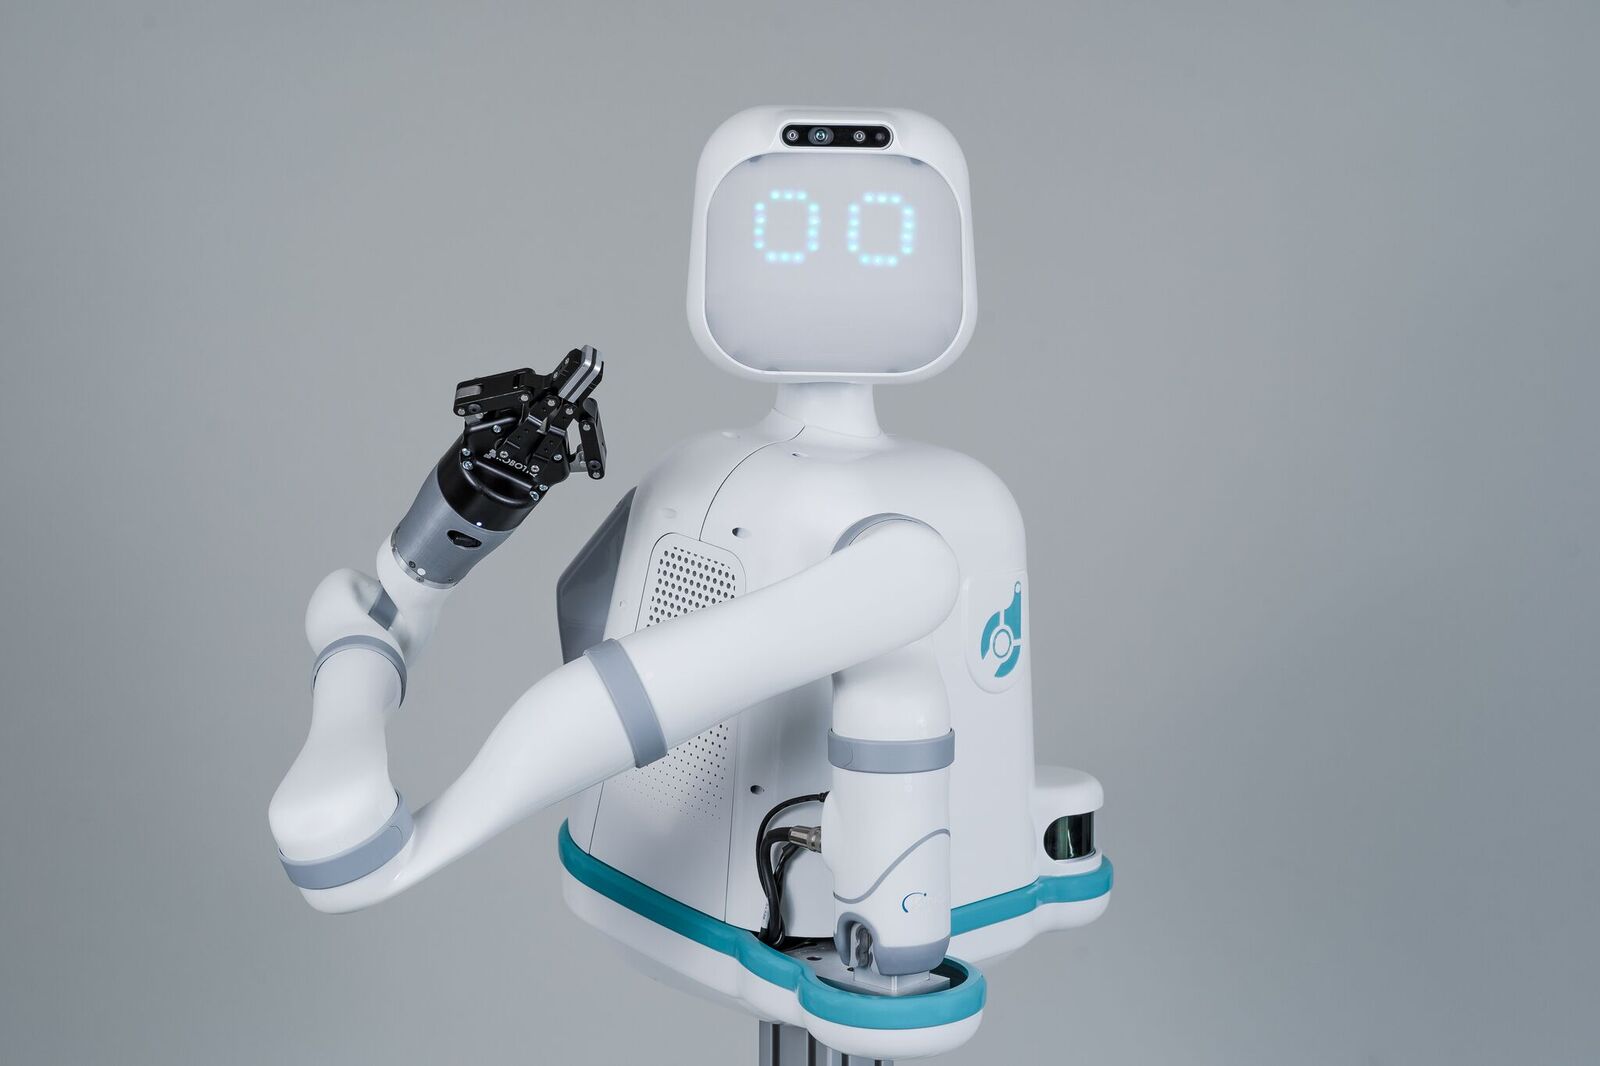 moxi hospital robot wants to help nurses 1